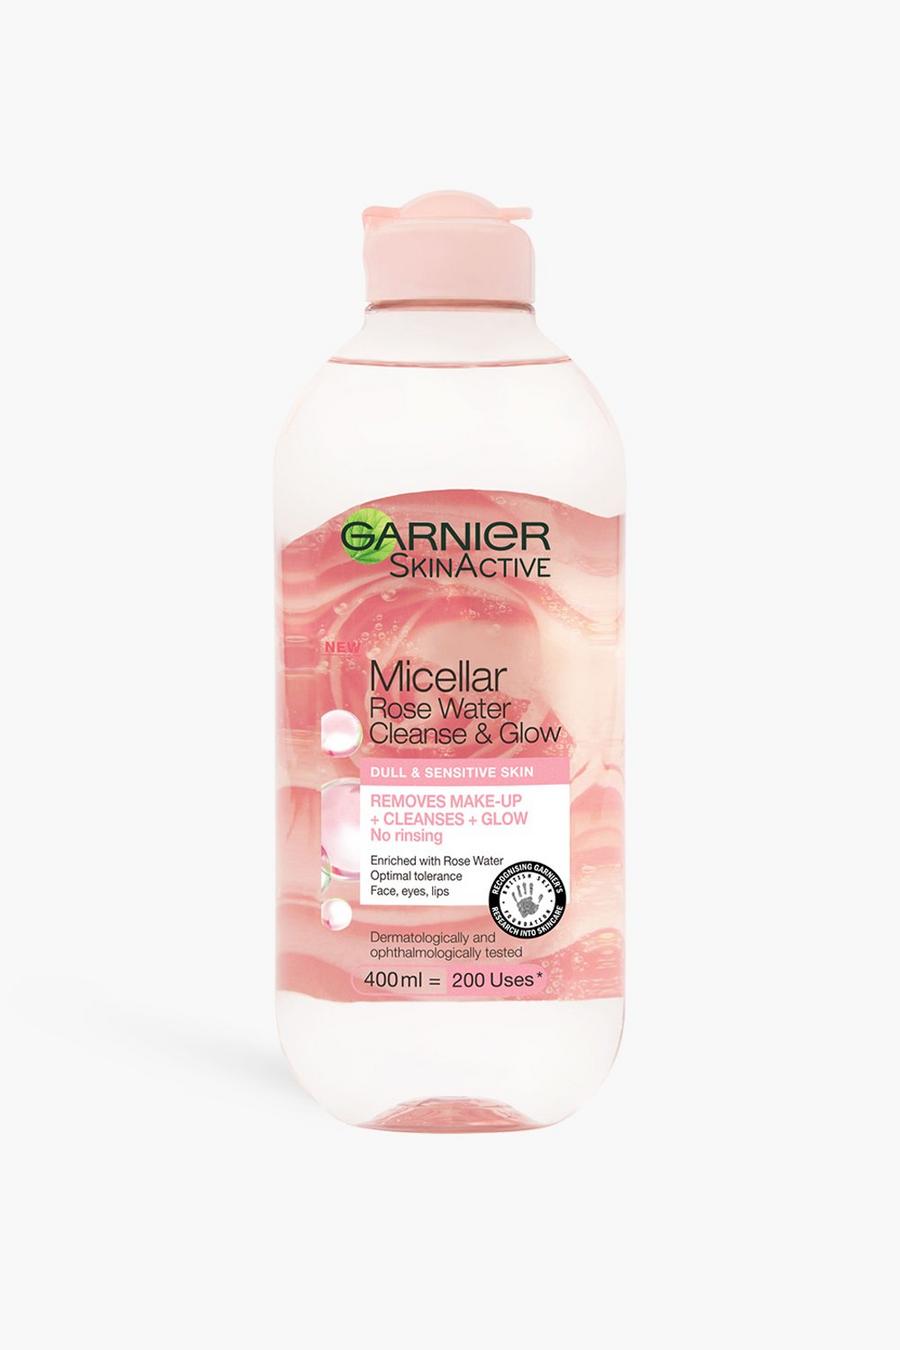 Baby pink rosa Garnier Micellar Rose Water Cleanse & Glow